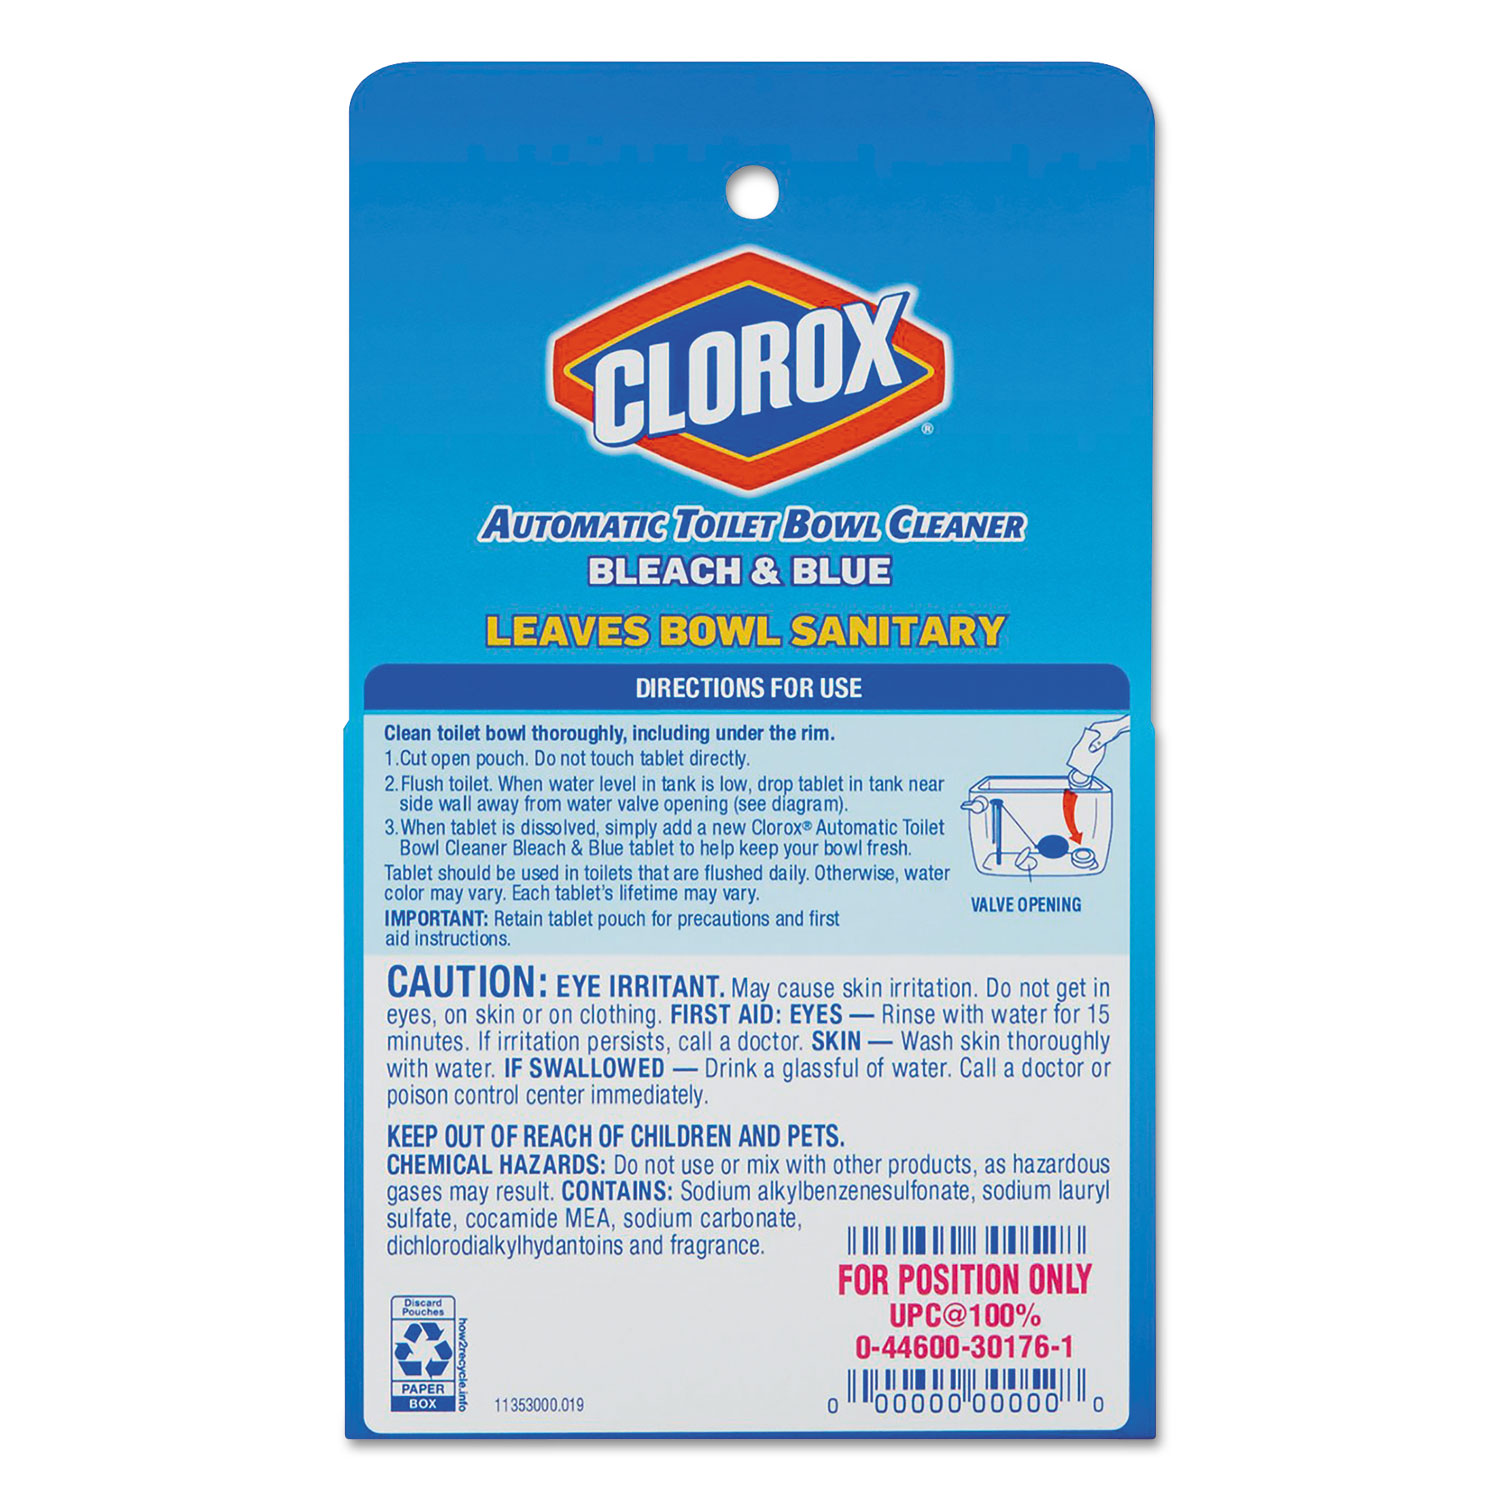 Clorox Bleach Product Label - Ythoreccio